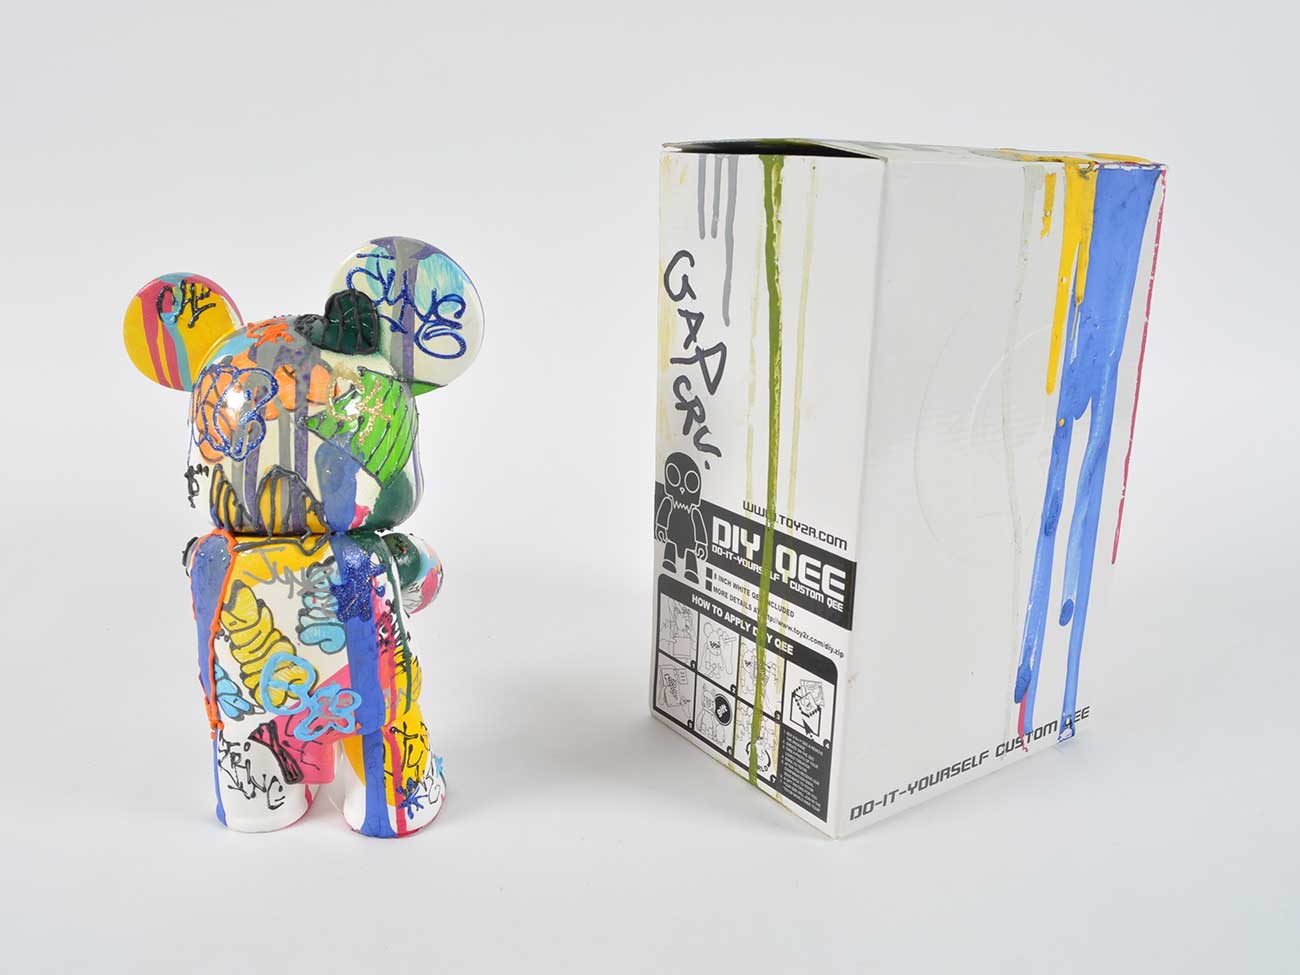 June Qee customisé, 2005 plastique moulé, peinture acrylique (bombe aérosol), marqueur, carton plié 26.6 x 13.5 x 17.3 cm. Signé et daté © Mucem 